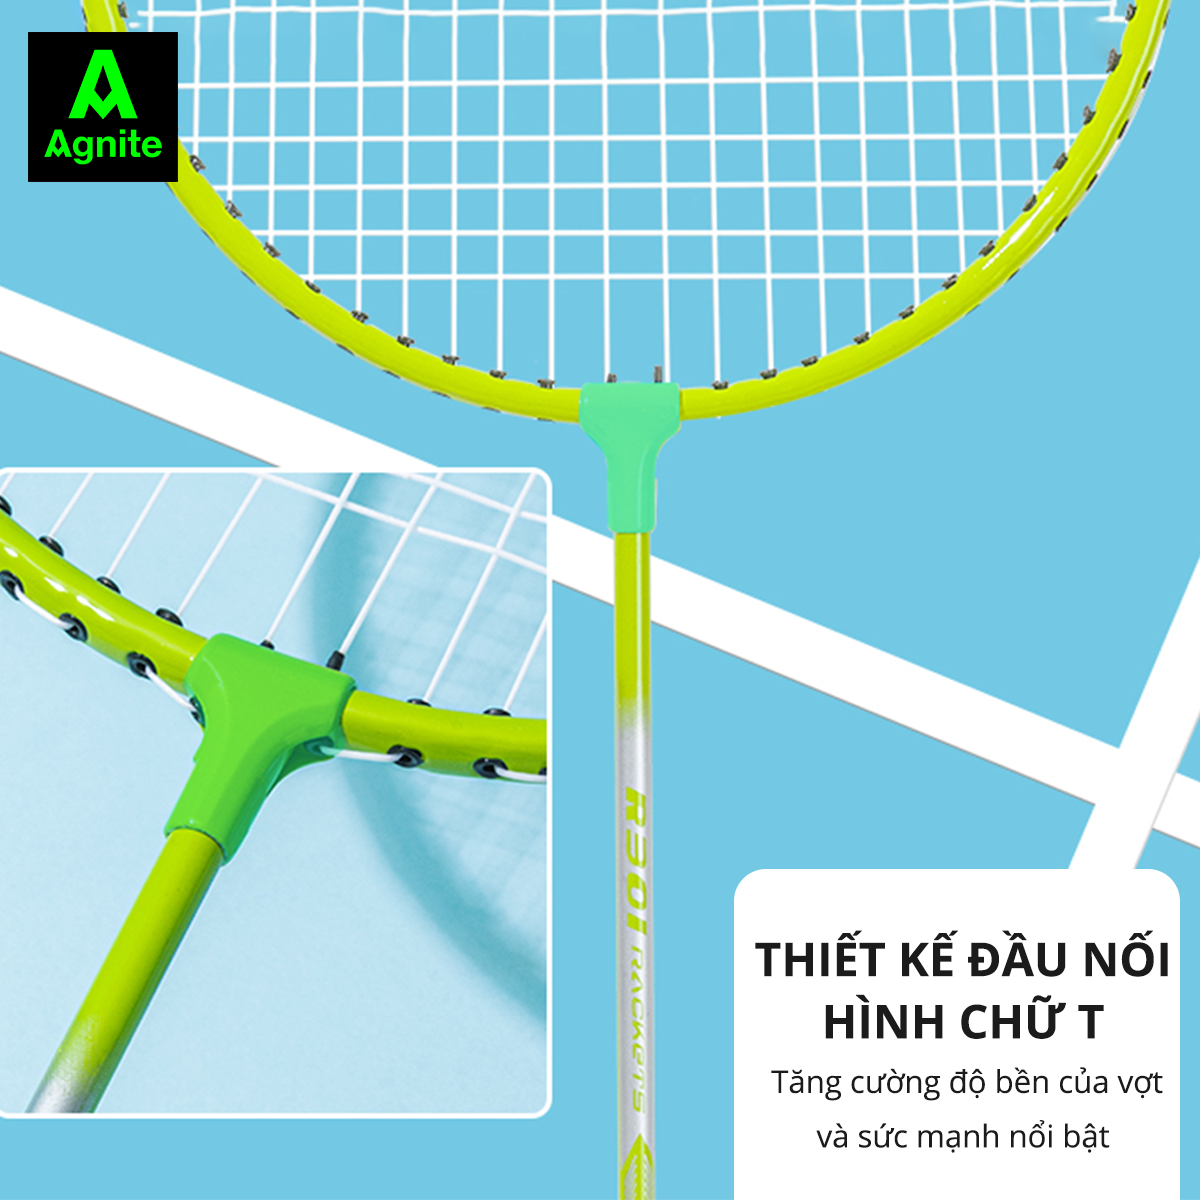 [Giá tốt nhất Mall] Bộ 2 vợt cầu lông giá rẻ chính hãng Agnite, bền, nhẹ, tặng kèm túi vợt và quả cầu lông - ER301/ER302